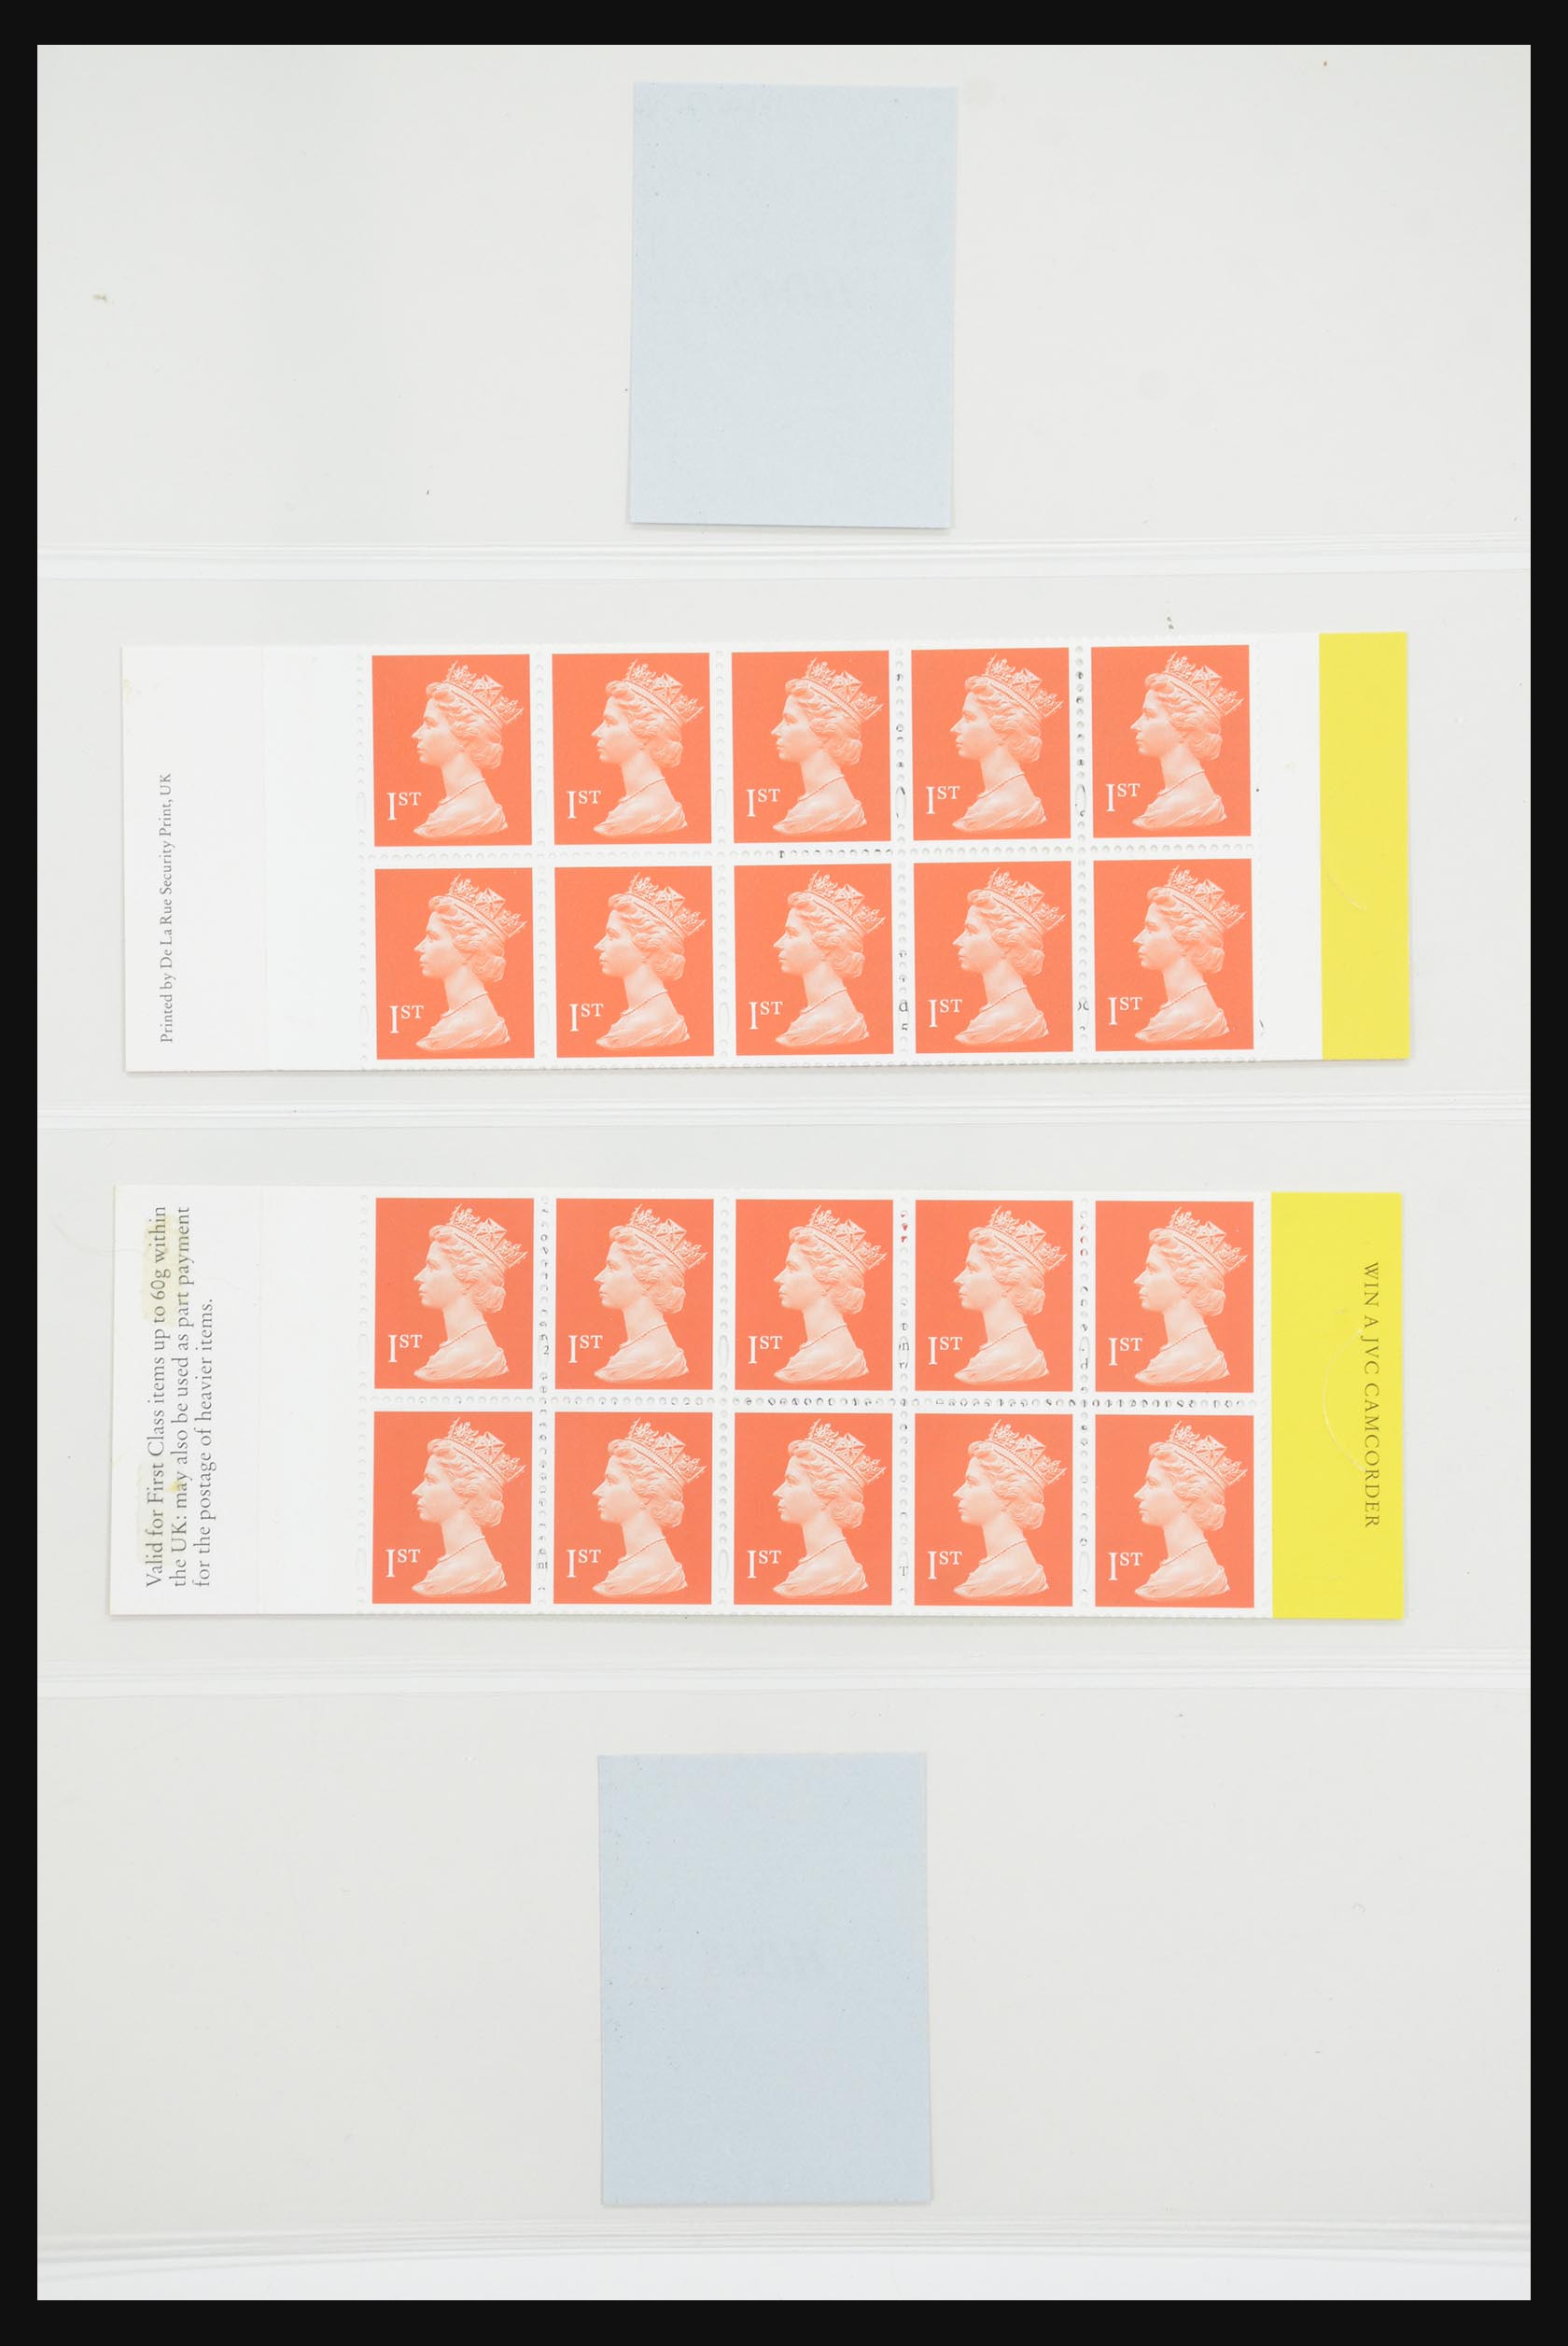 31960 170 - 31960 Engeland postzegelboekjes 1989-2000.